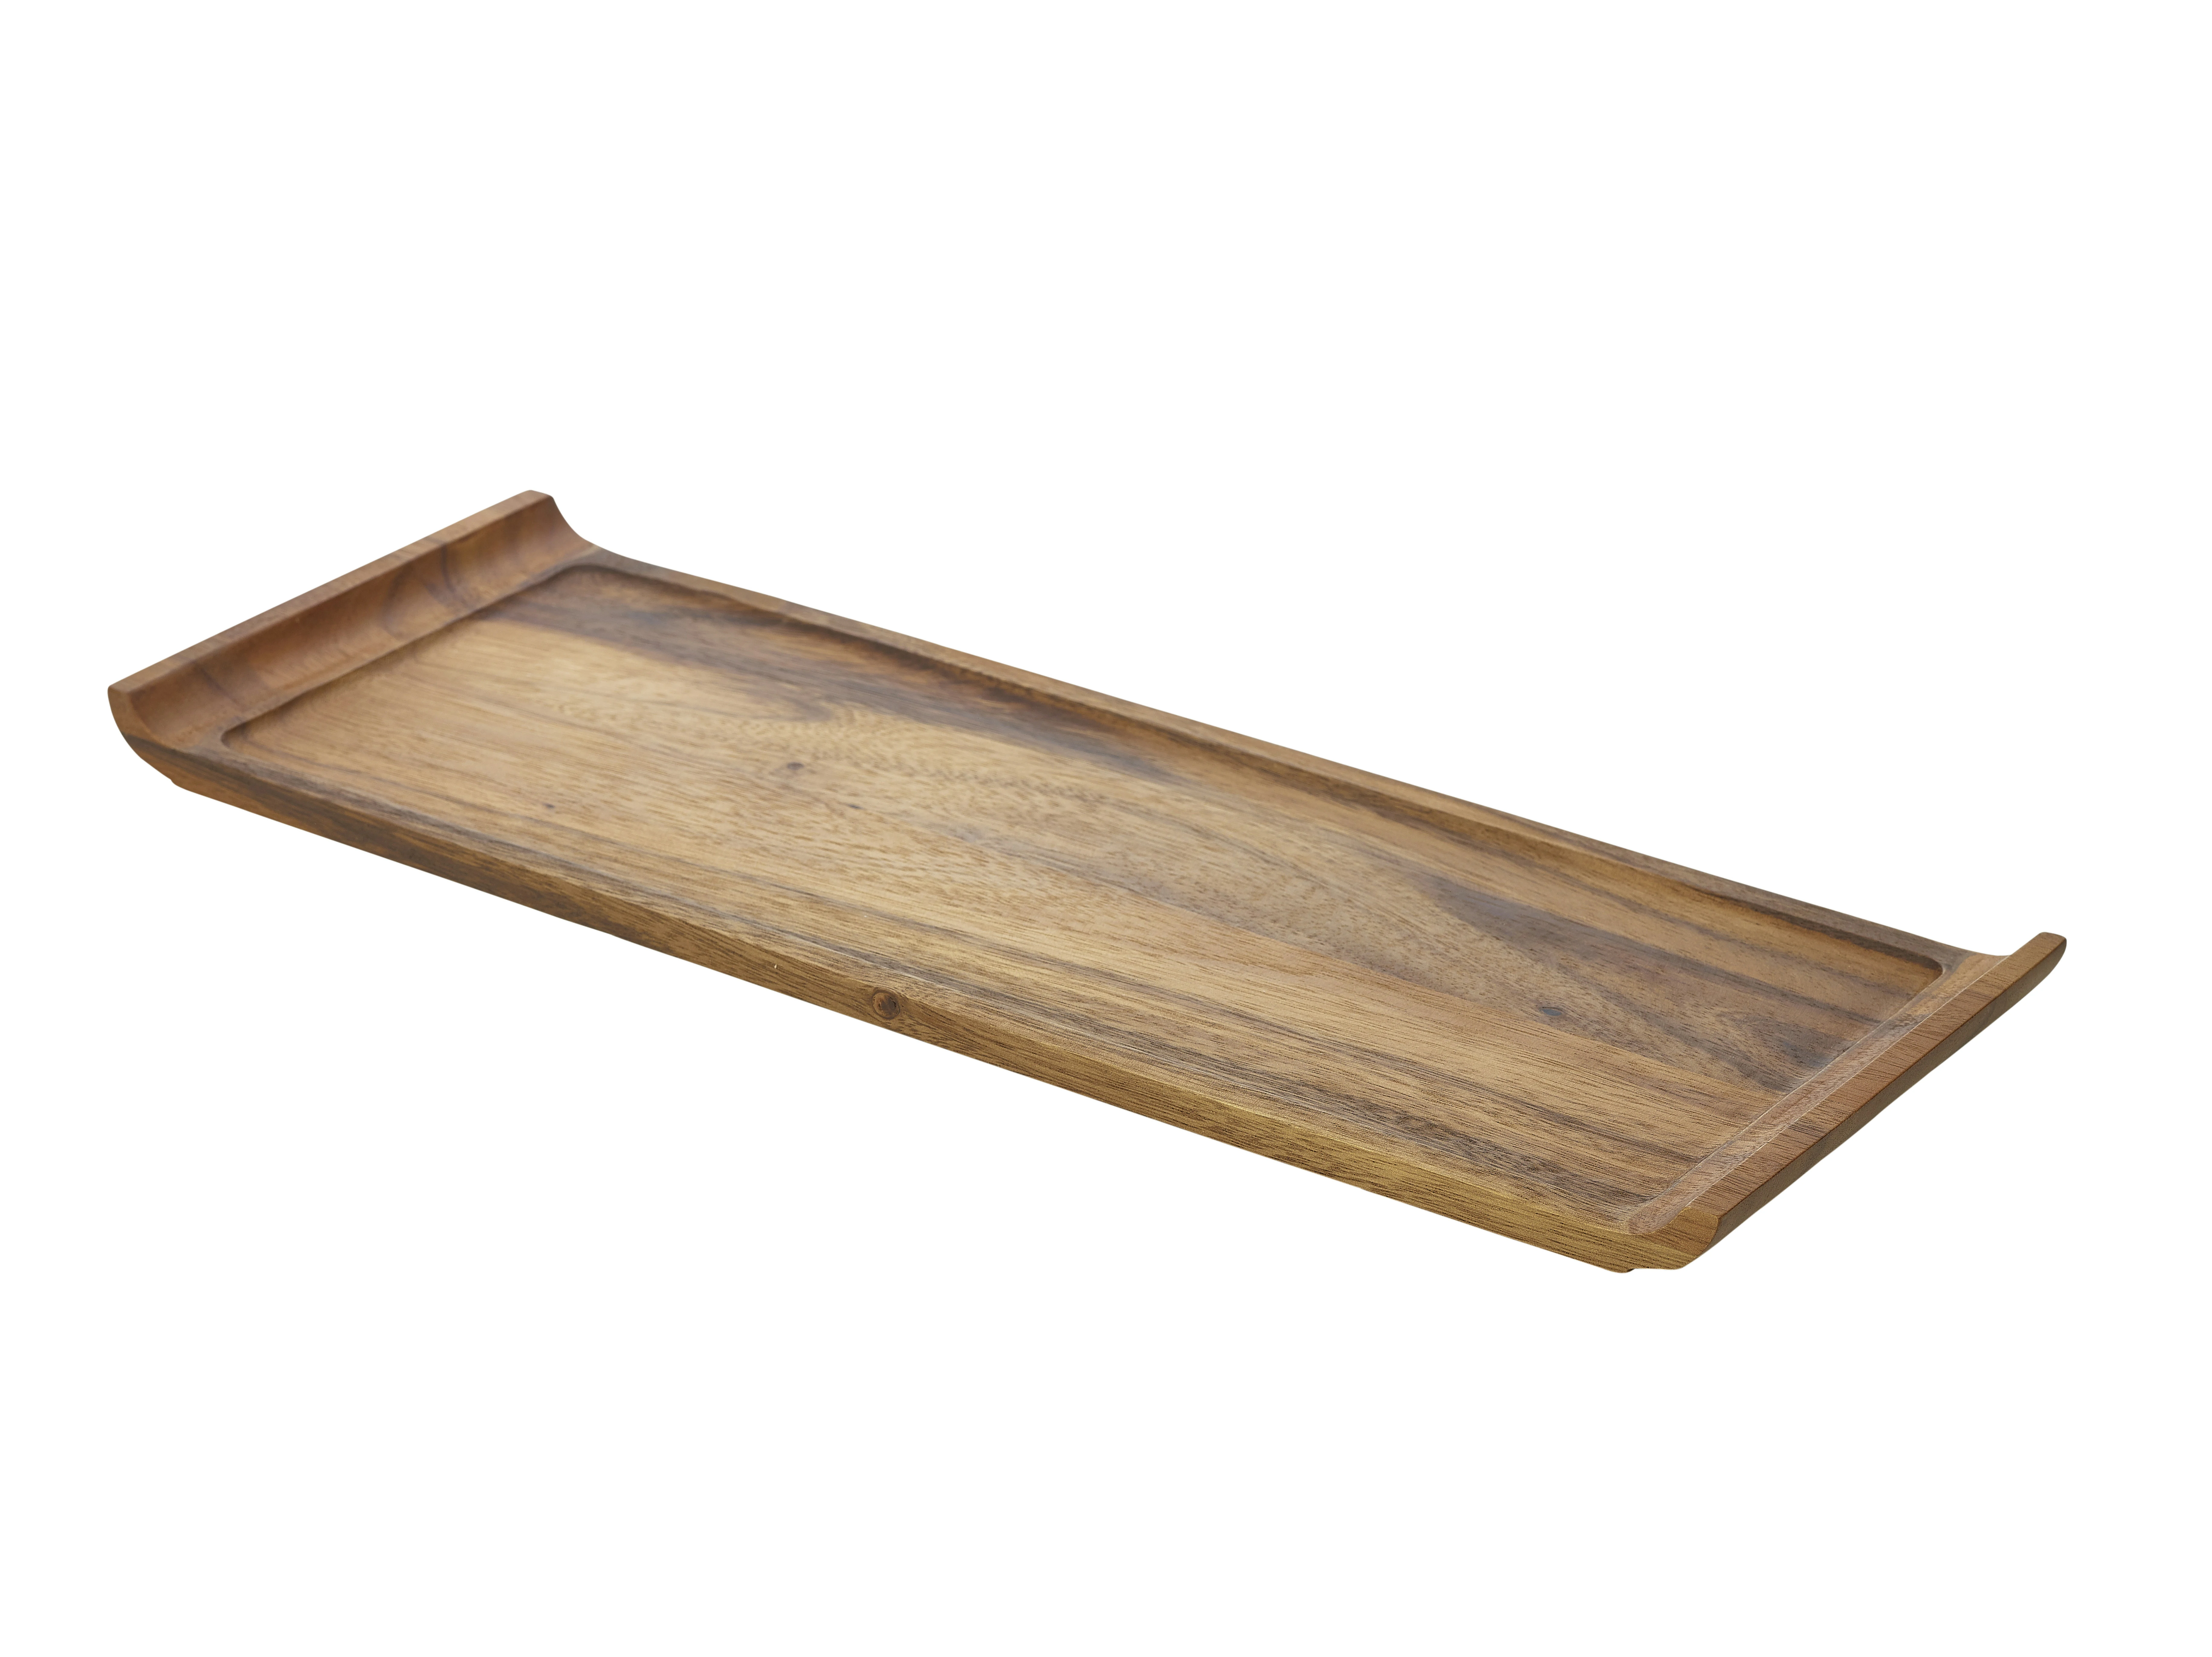 Acacia Wood Serving Platter 46 x 17.5 x 2cm